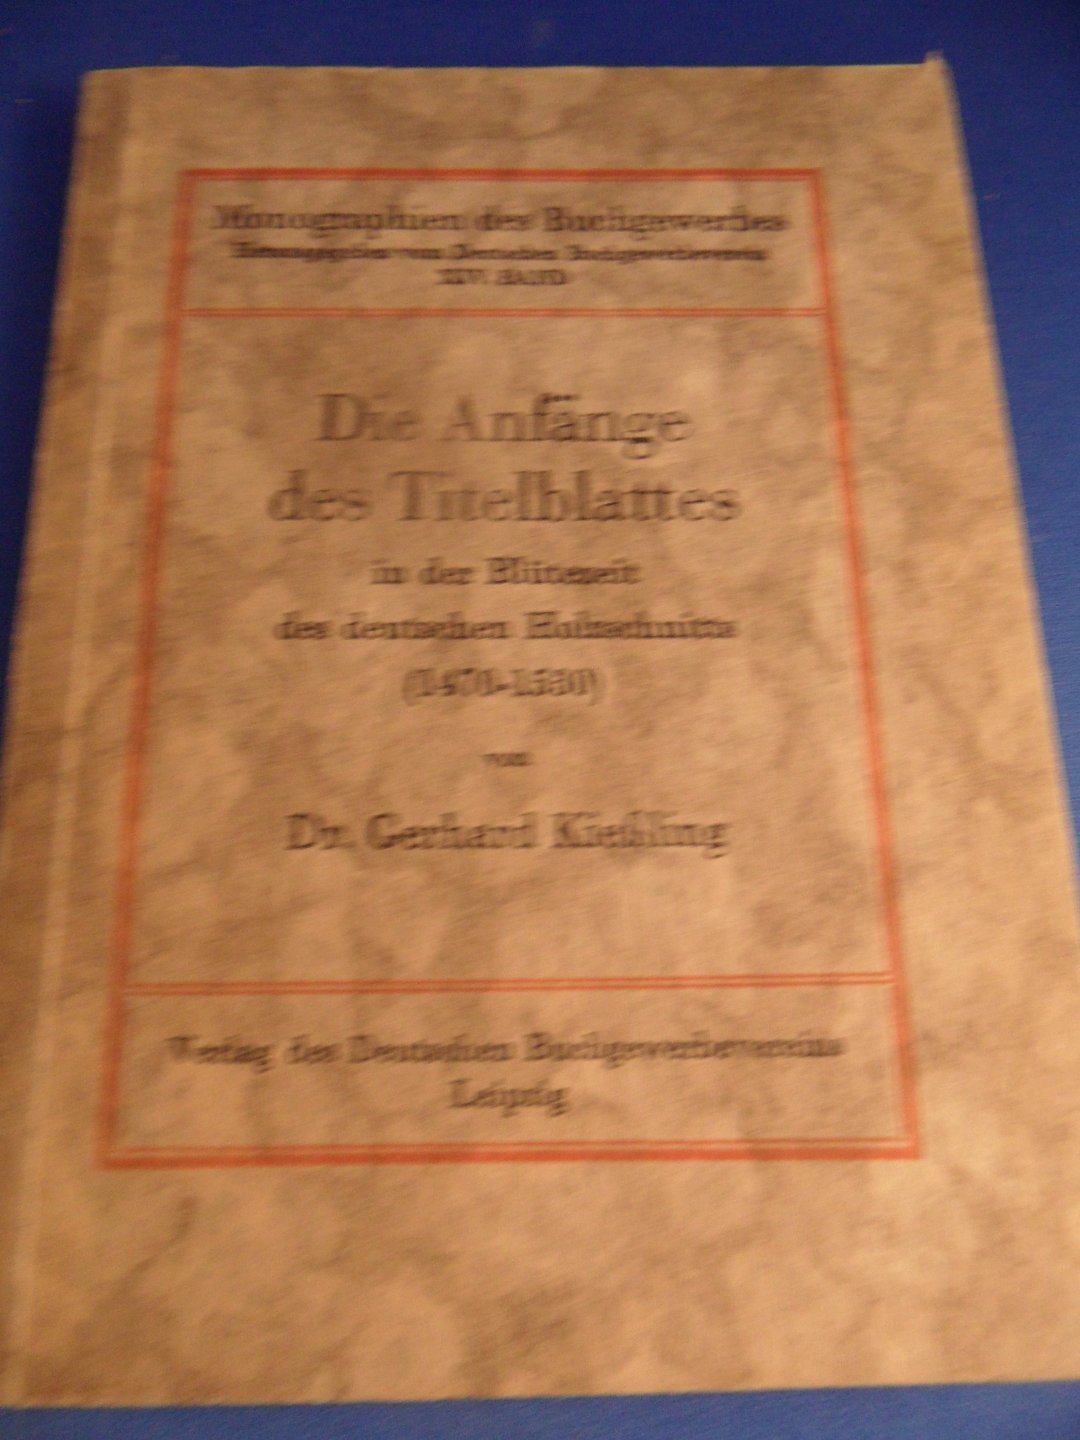 Kiessling, dr. Gerhard - Die Anfänge des Titelblattes in der Blütezeit des deutschen Holzschnitts